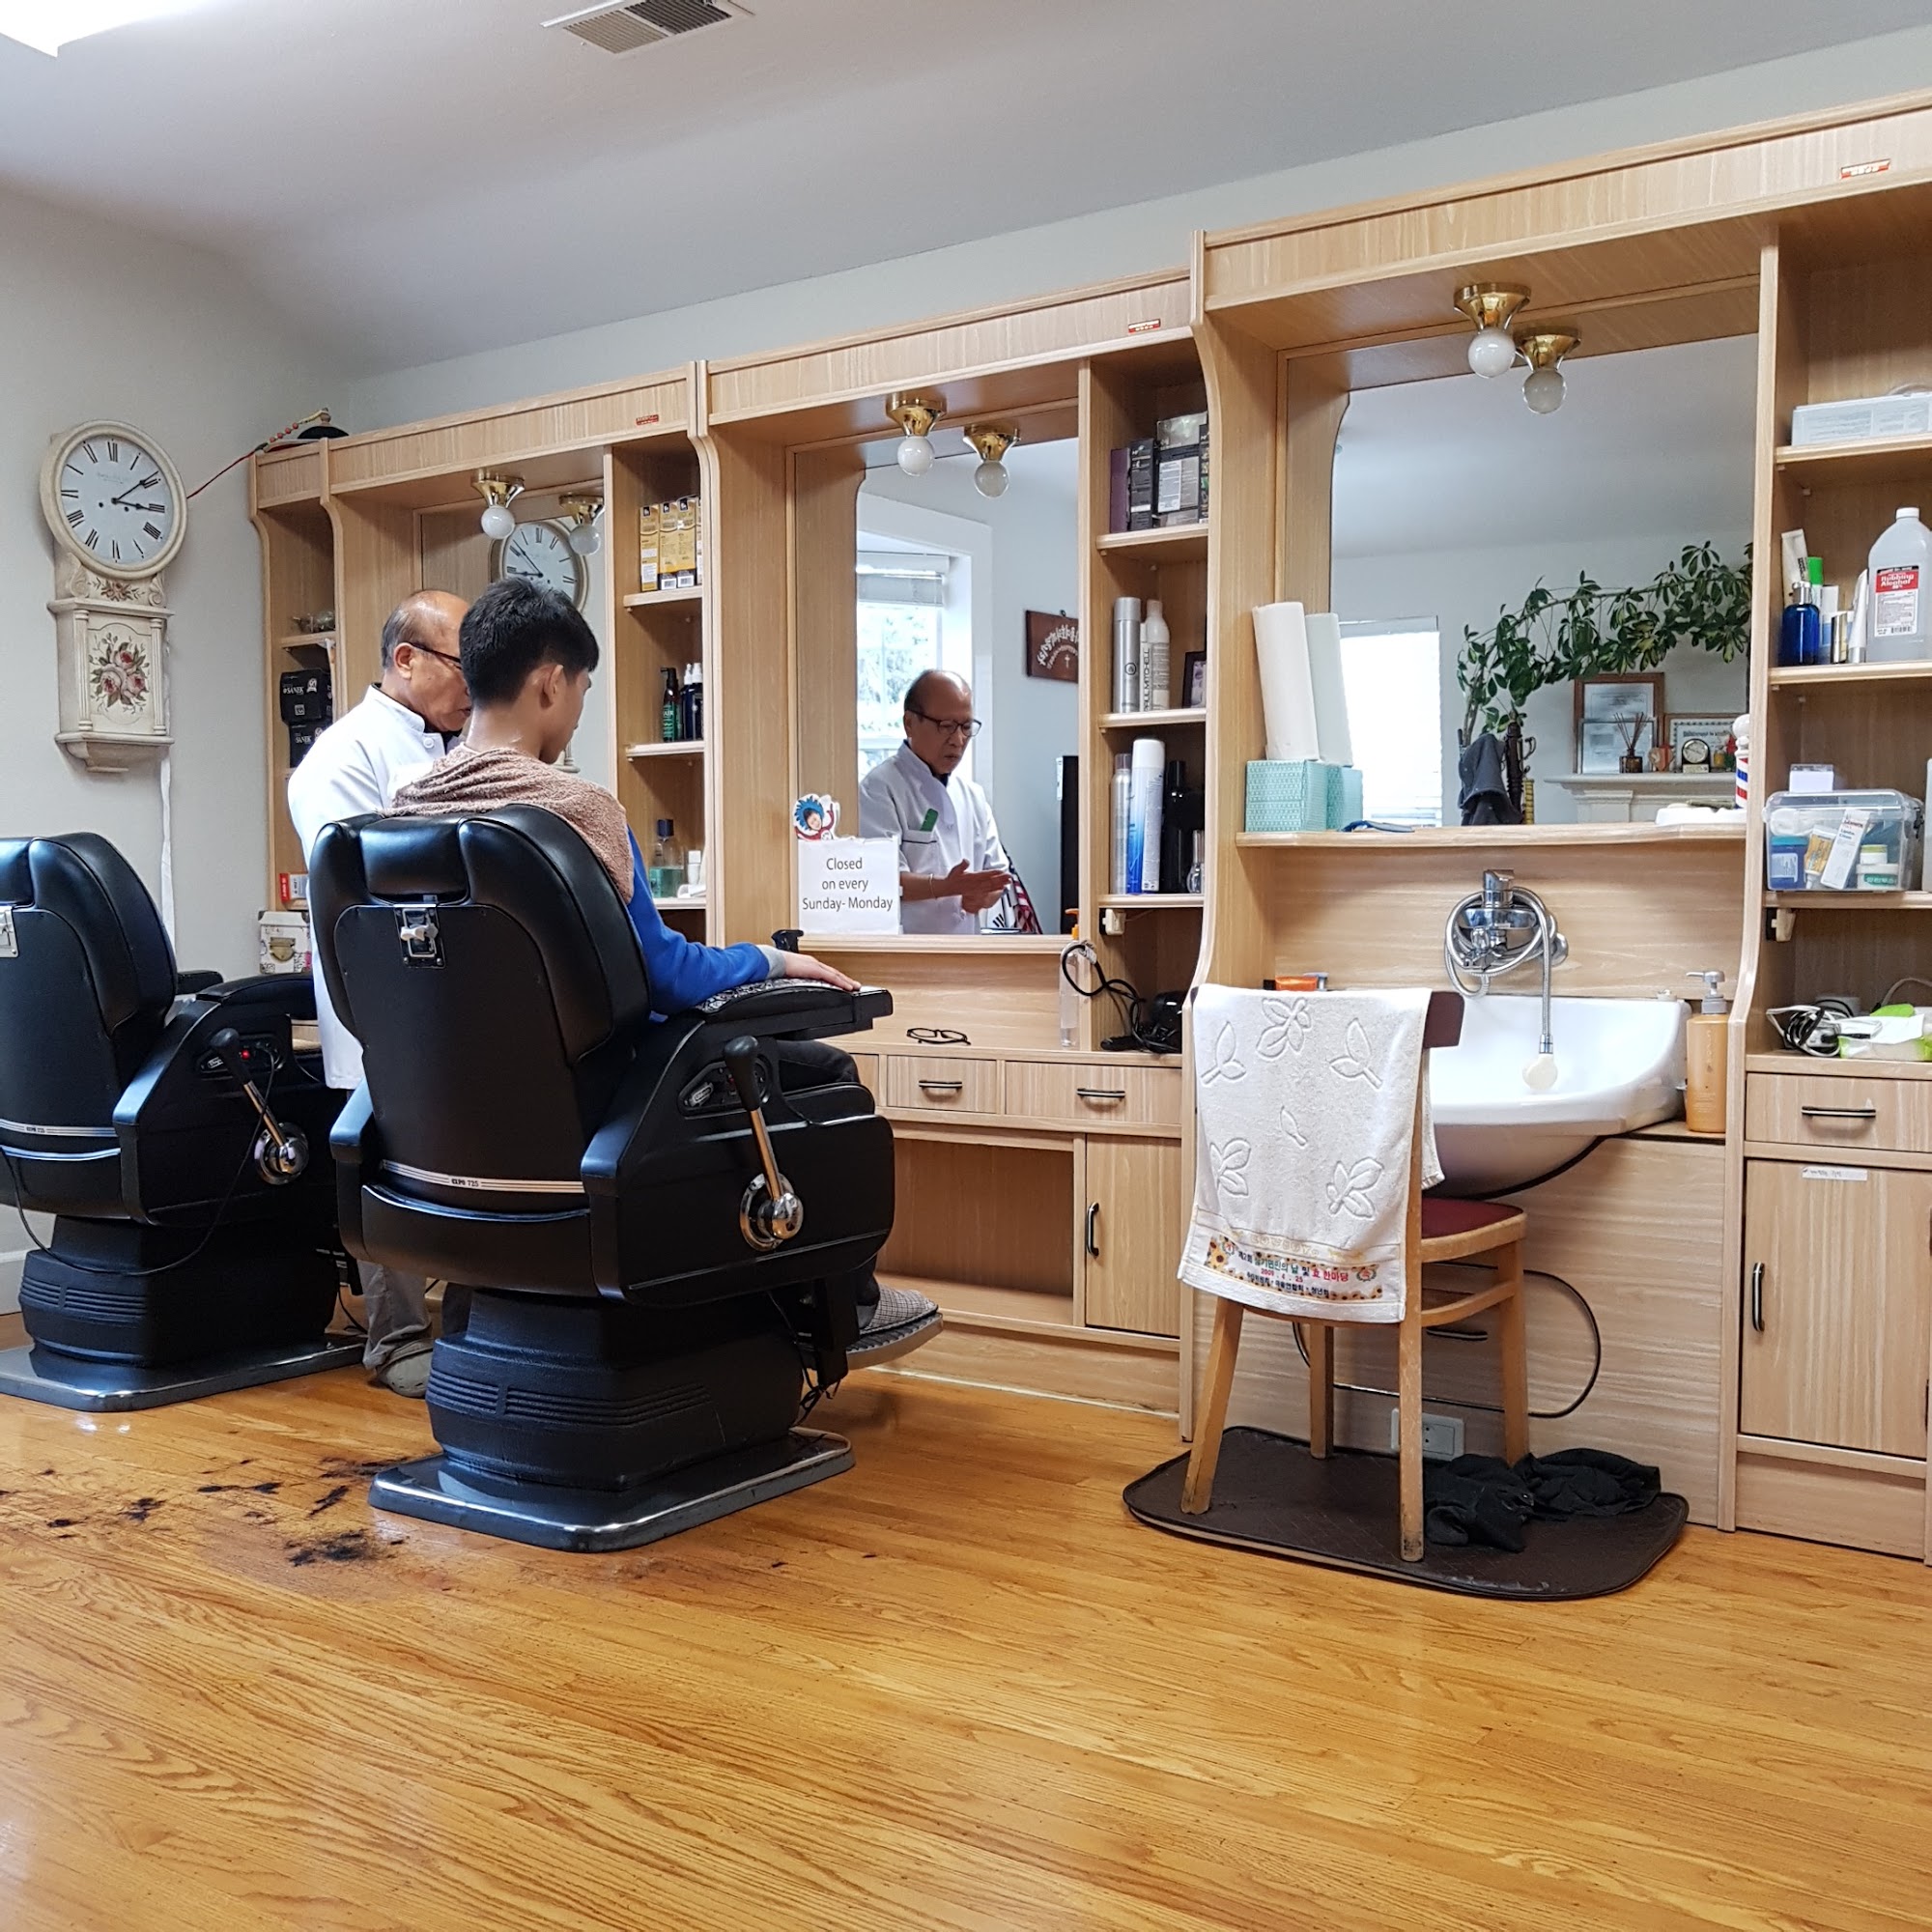 Chois Barber Shop